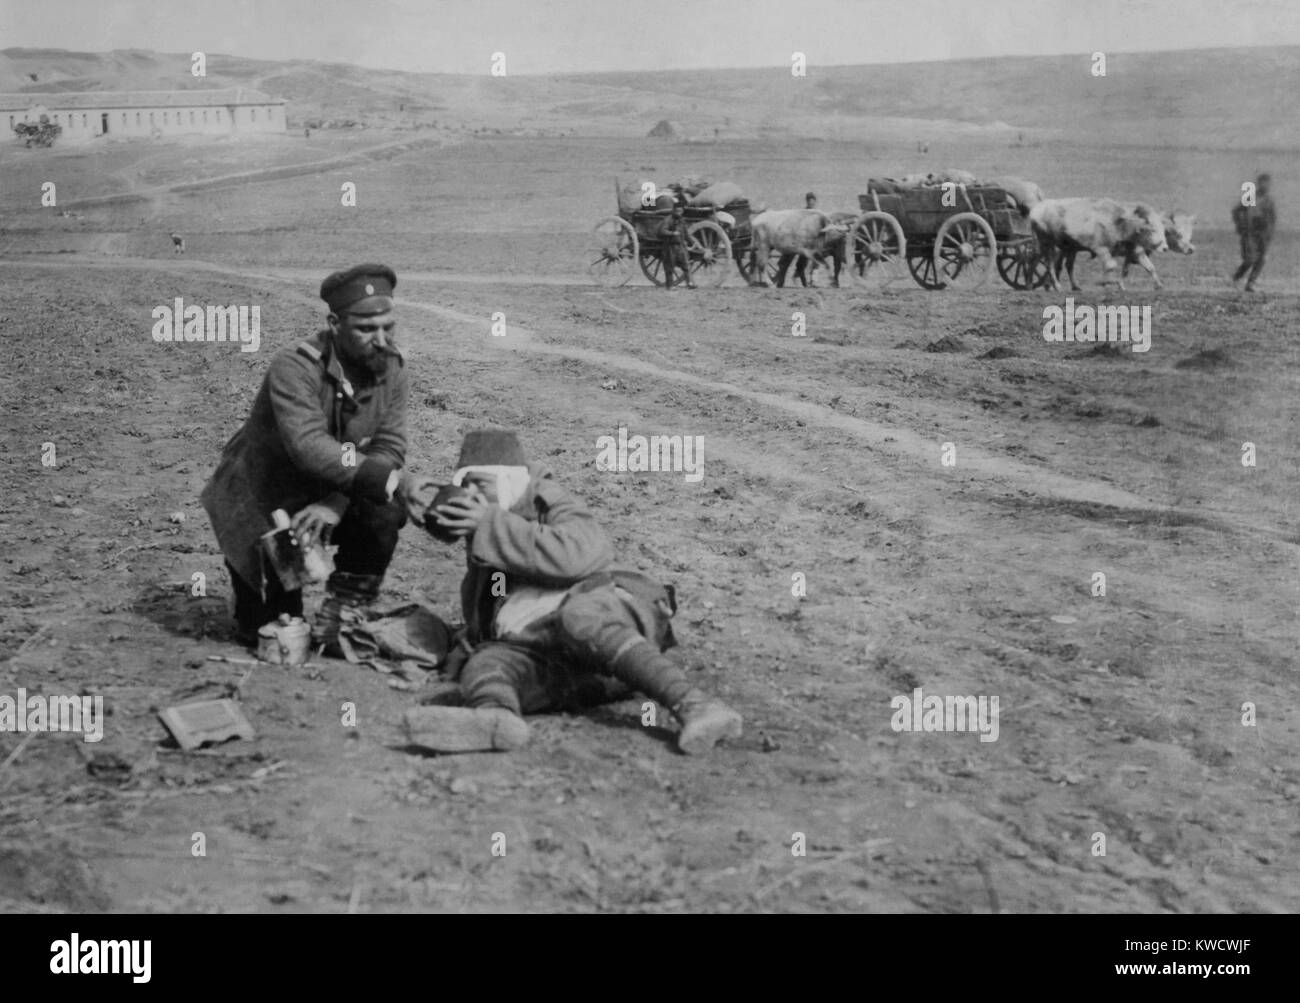 Belagerung von Osmanischen Adrianopel (Edirne) von Bulganian und serbischen Streitkräfte, Nov. 3, 1912 - März 26, 1913. Bulgarische Soldaten geben Wasser sterben Turk (BSLOC 2017 1 144) Stockfoto